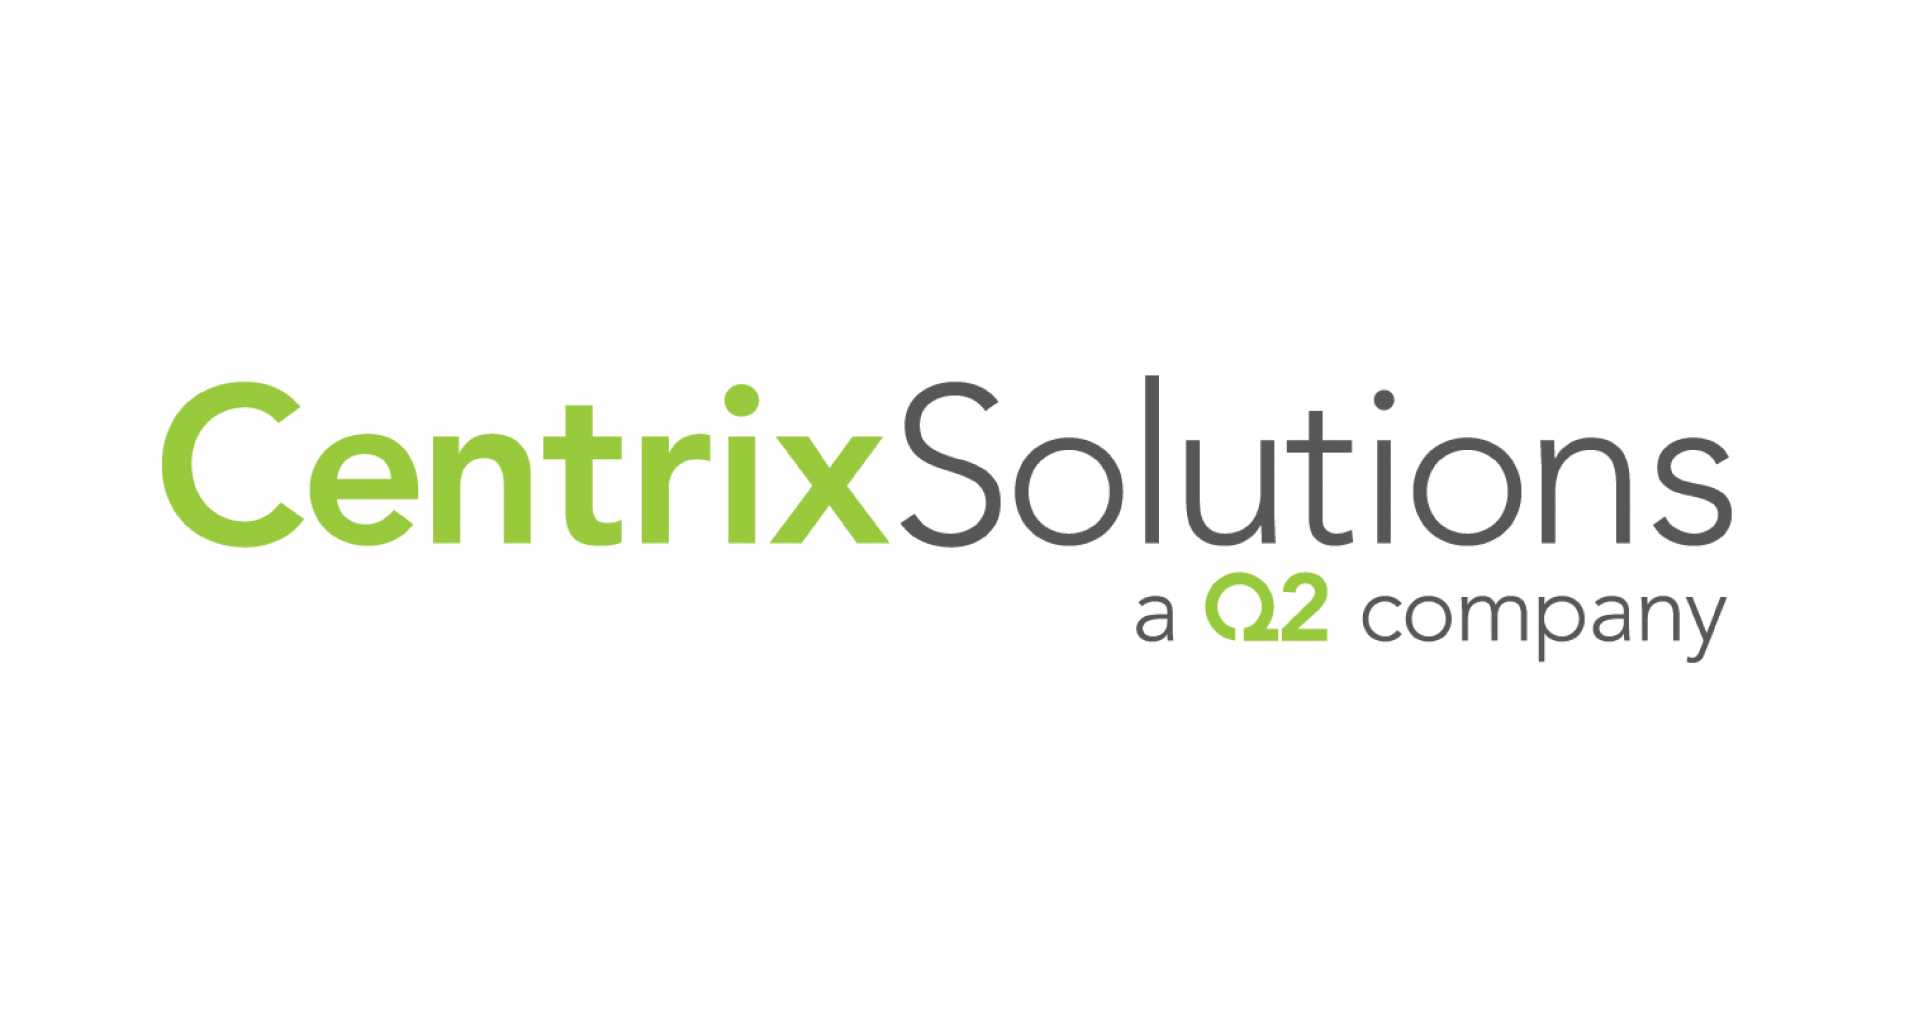 Centrix logo